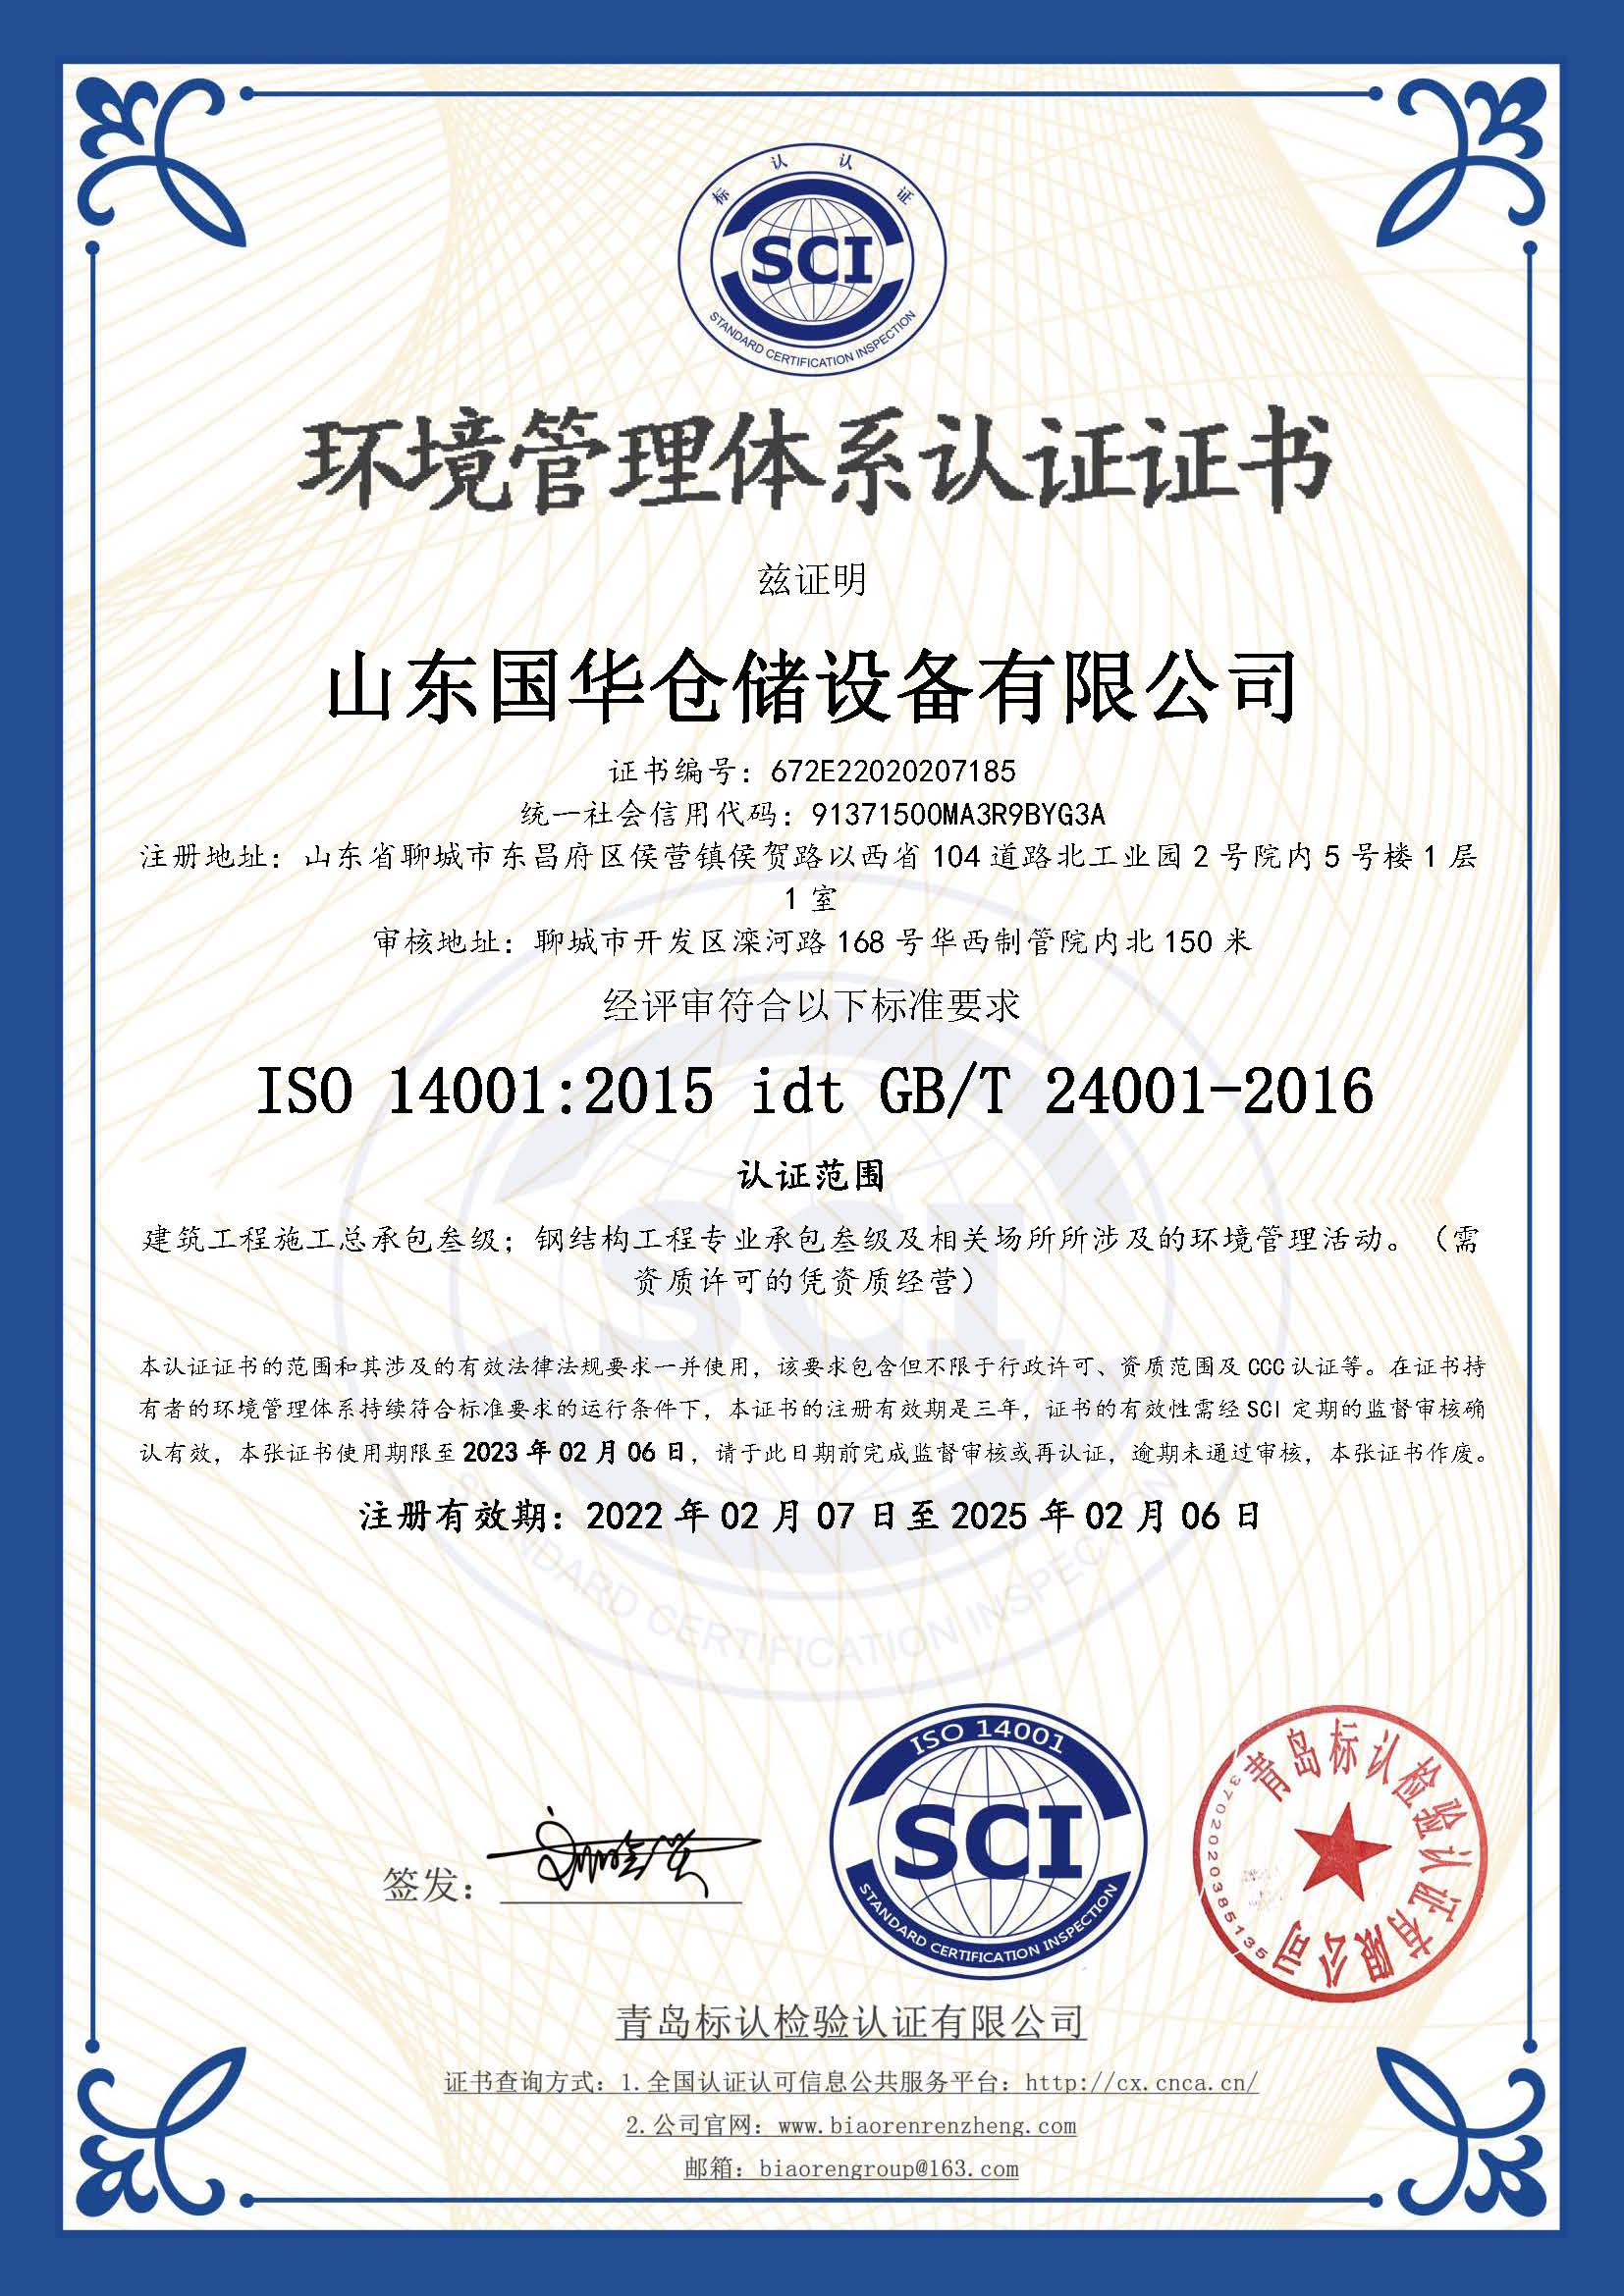 柳州钢板仓环境管理体系认证证书